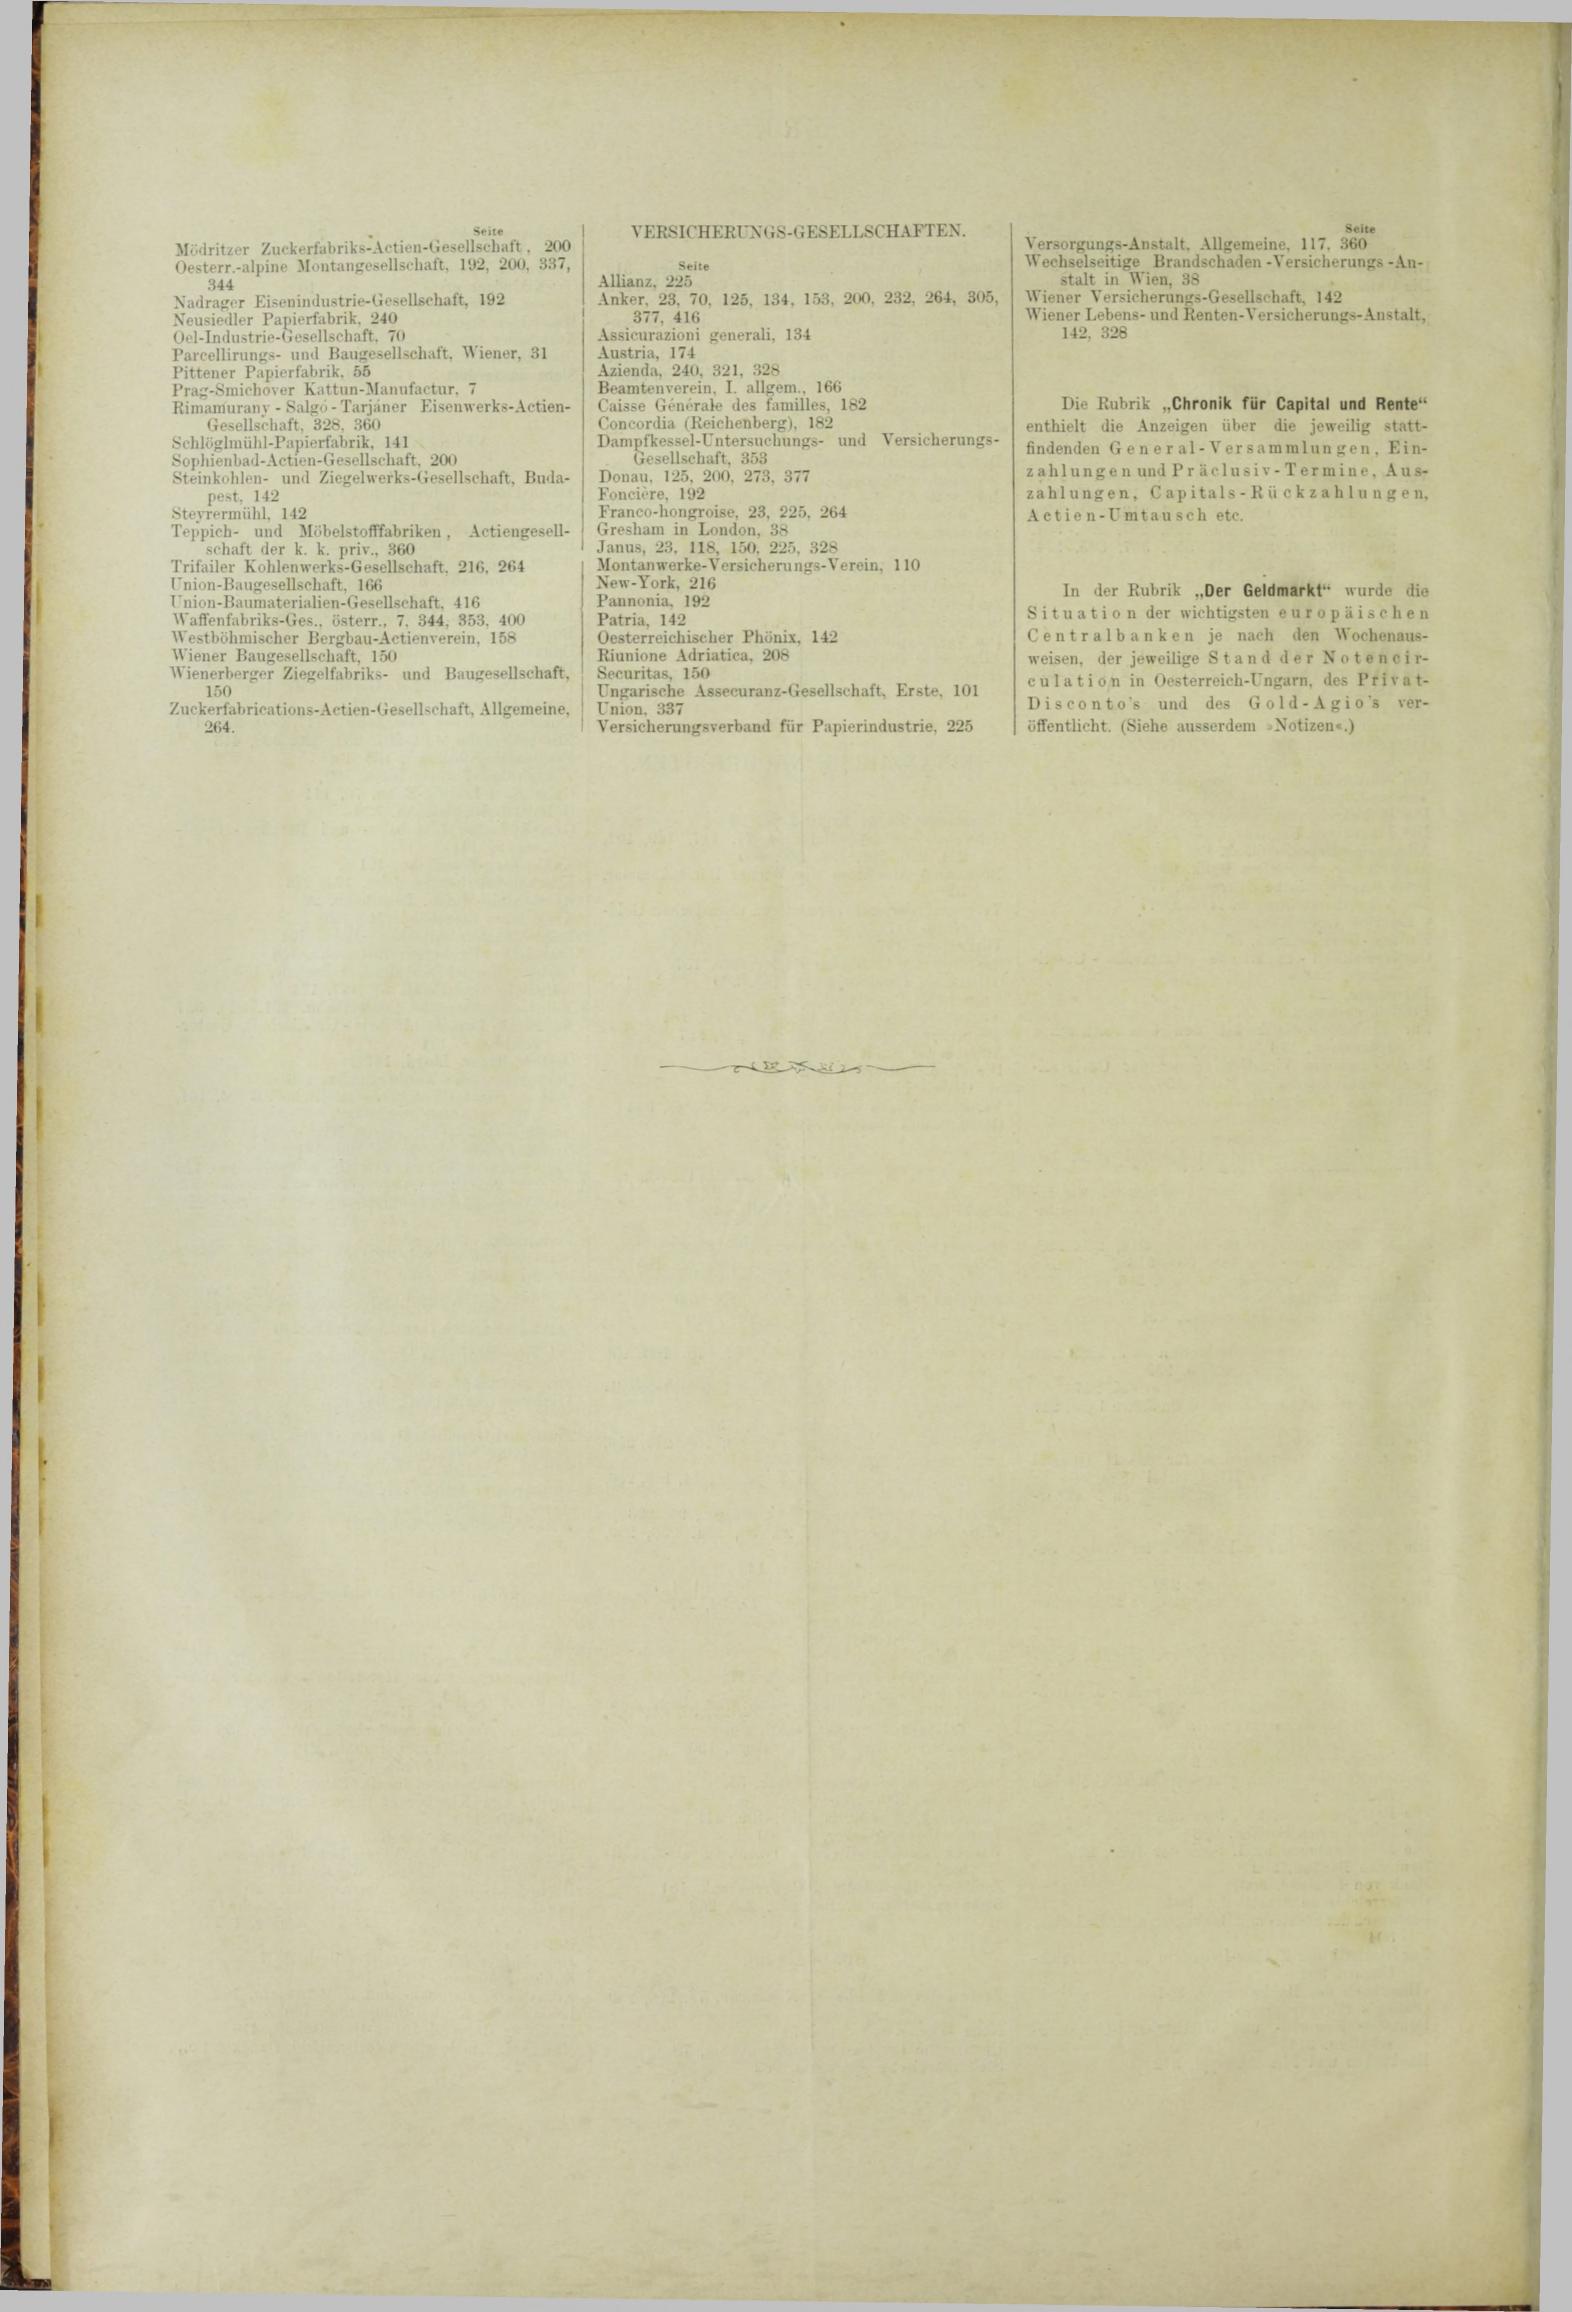 Der Tresor 22.11.1883 - Seite 12